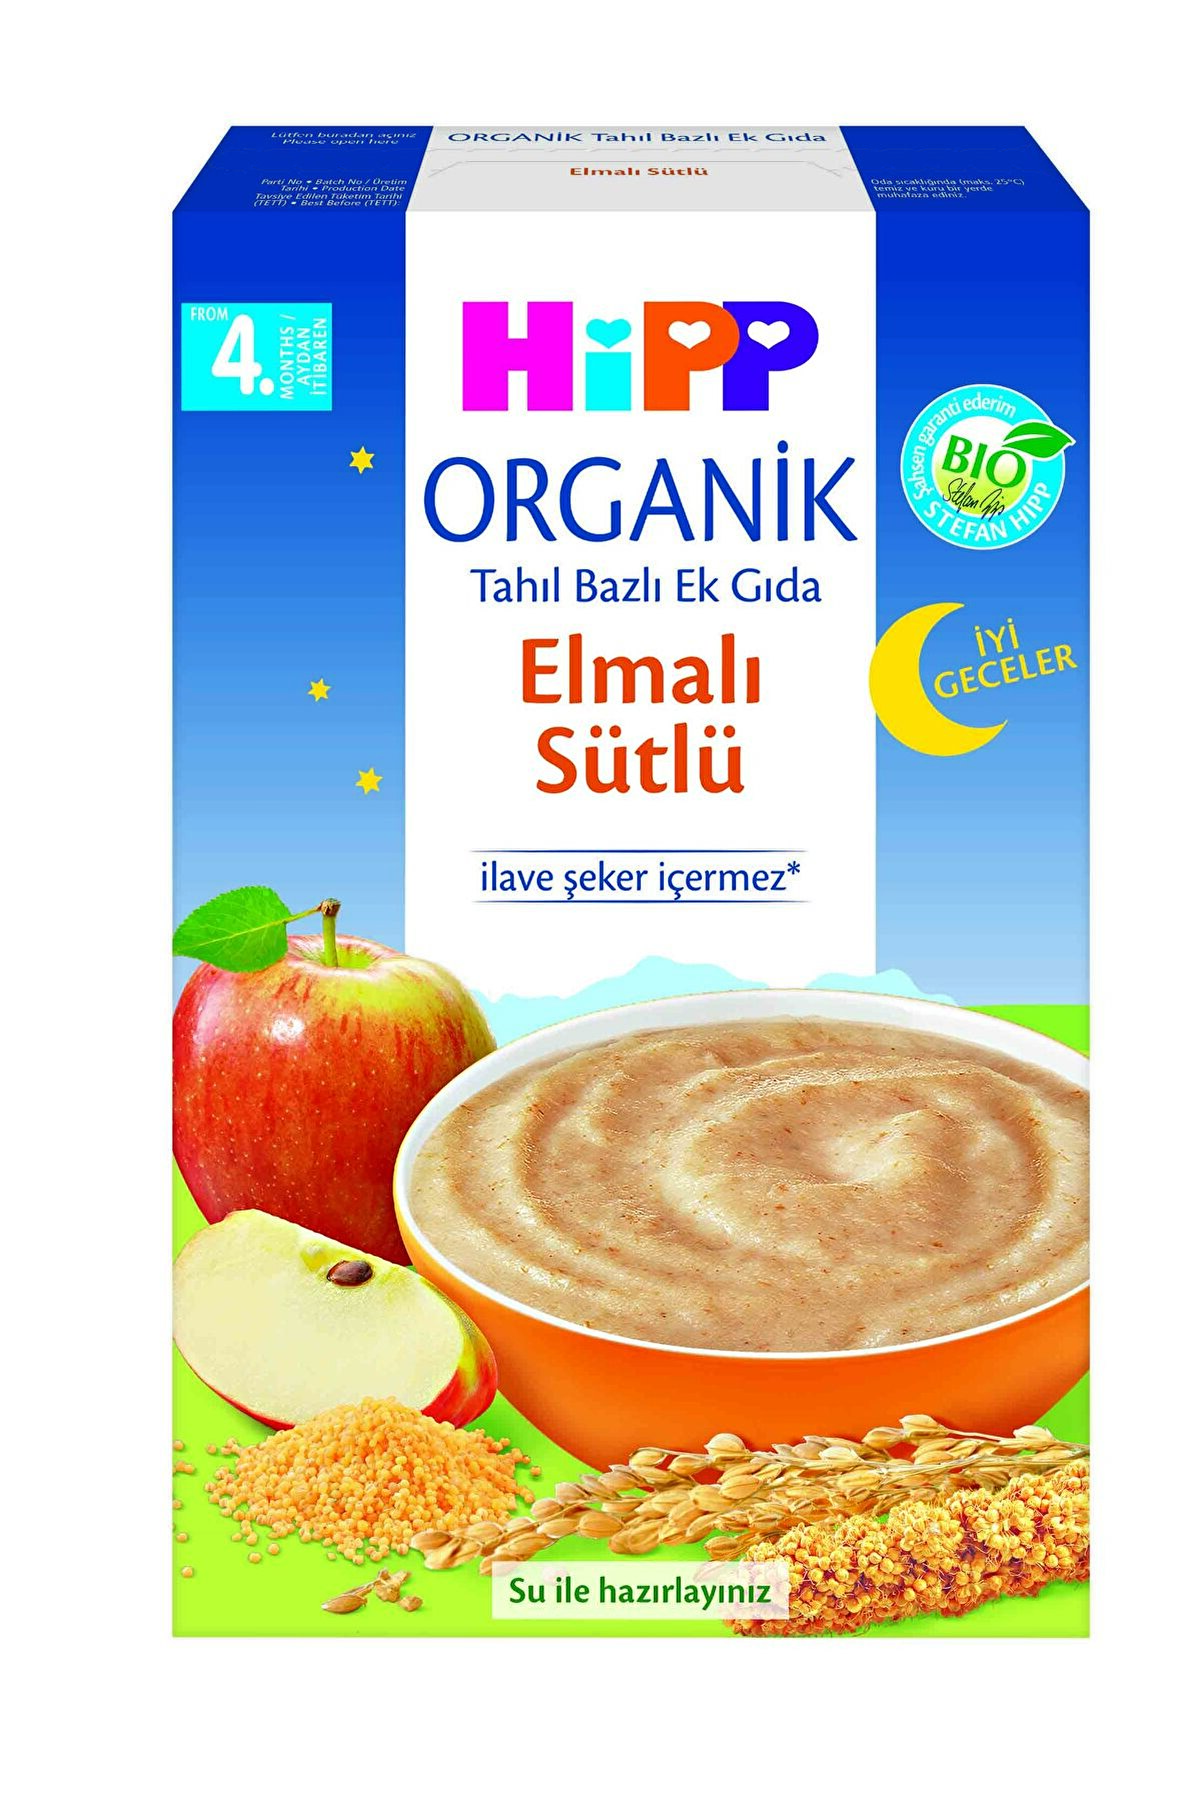 Hipp Organik I?yi Geceler Elmalı Sütlü Tahıl Bazlı Ek Gıda 250 gr